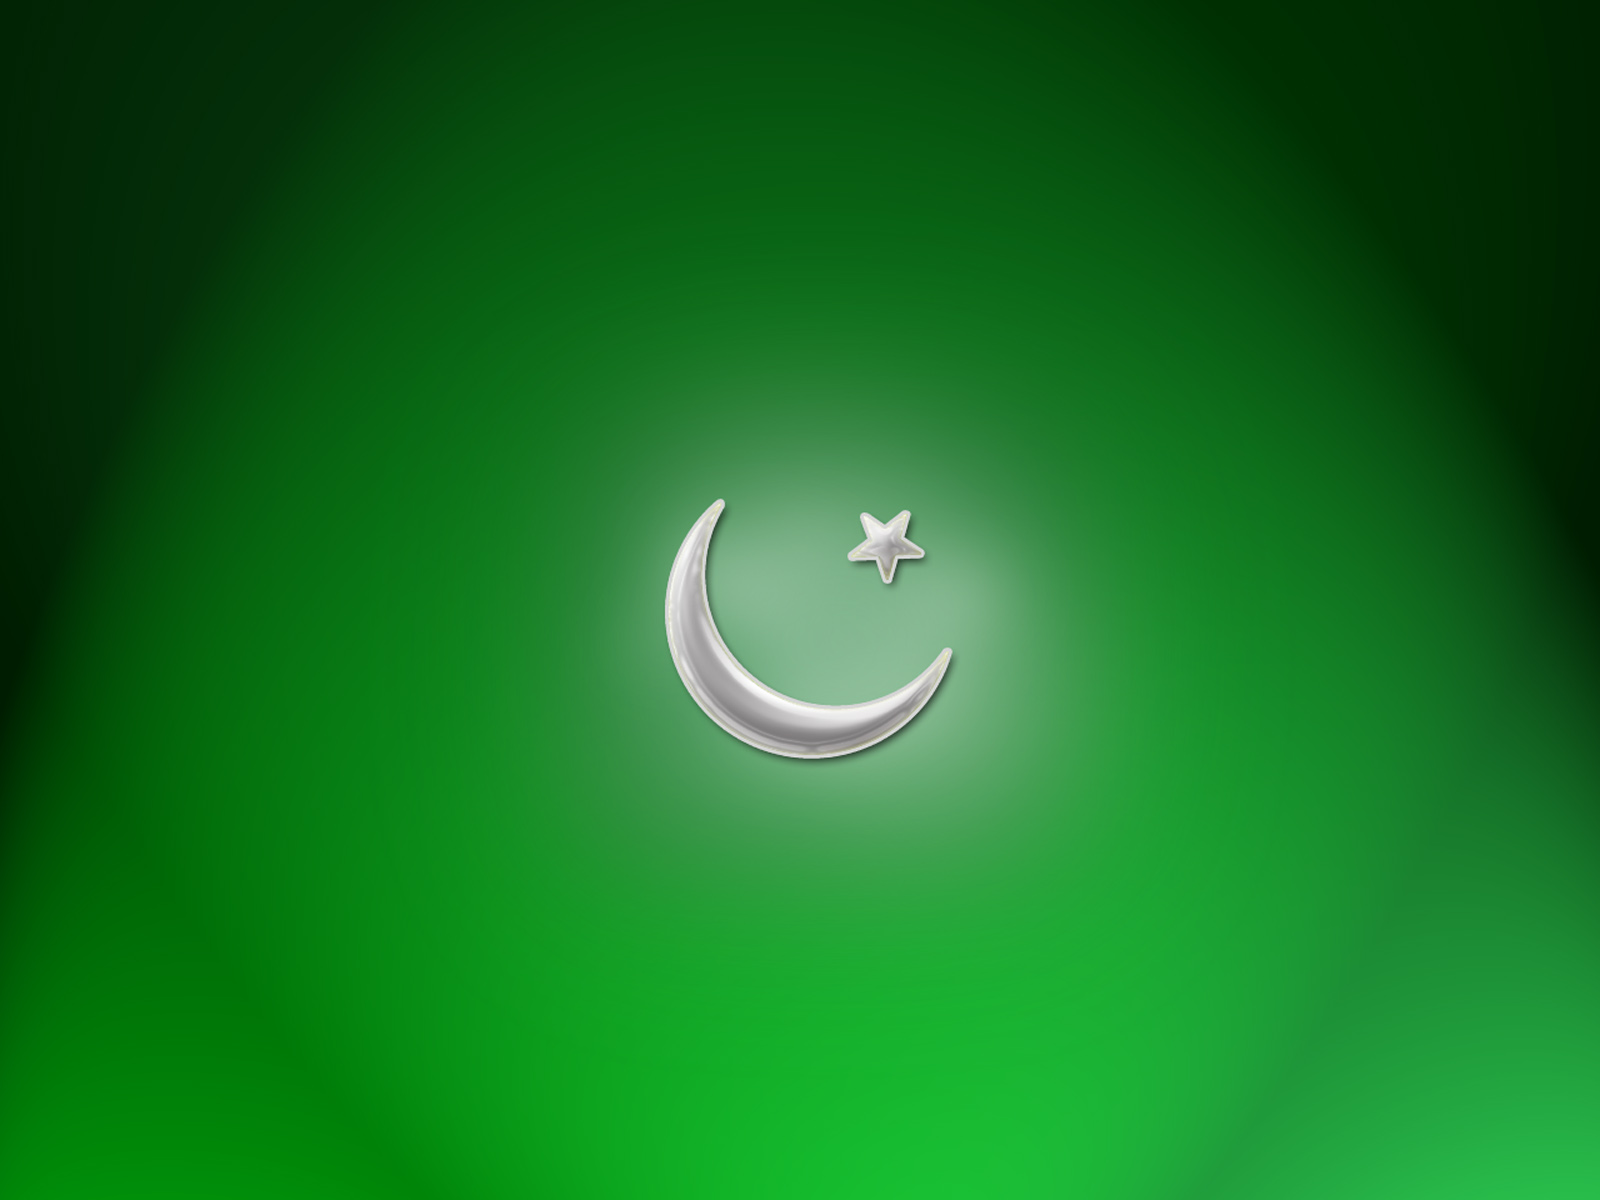 fond d'écran du drapeau du pakistan,vert,croissant,symbole,police de caractère,icône